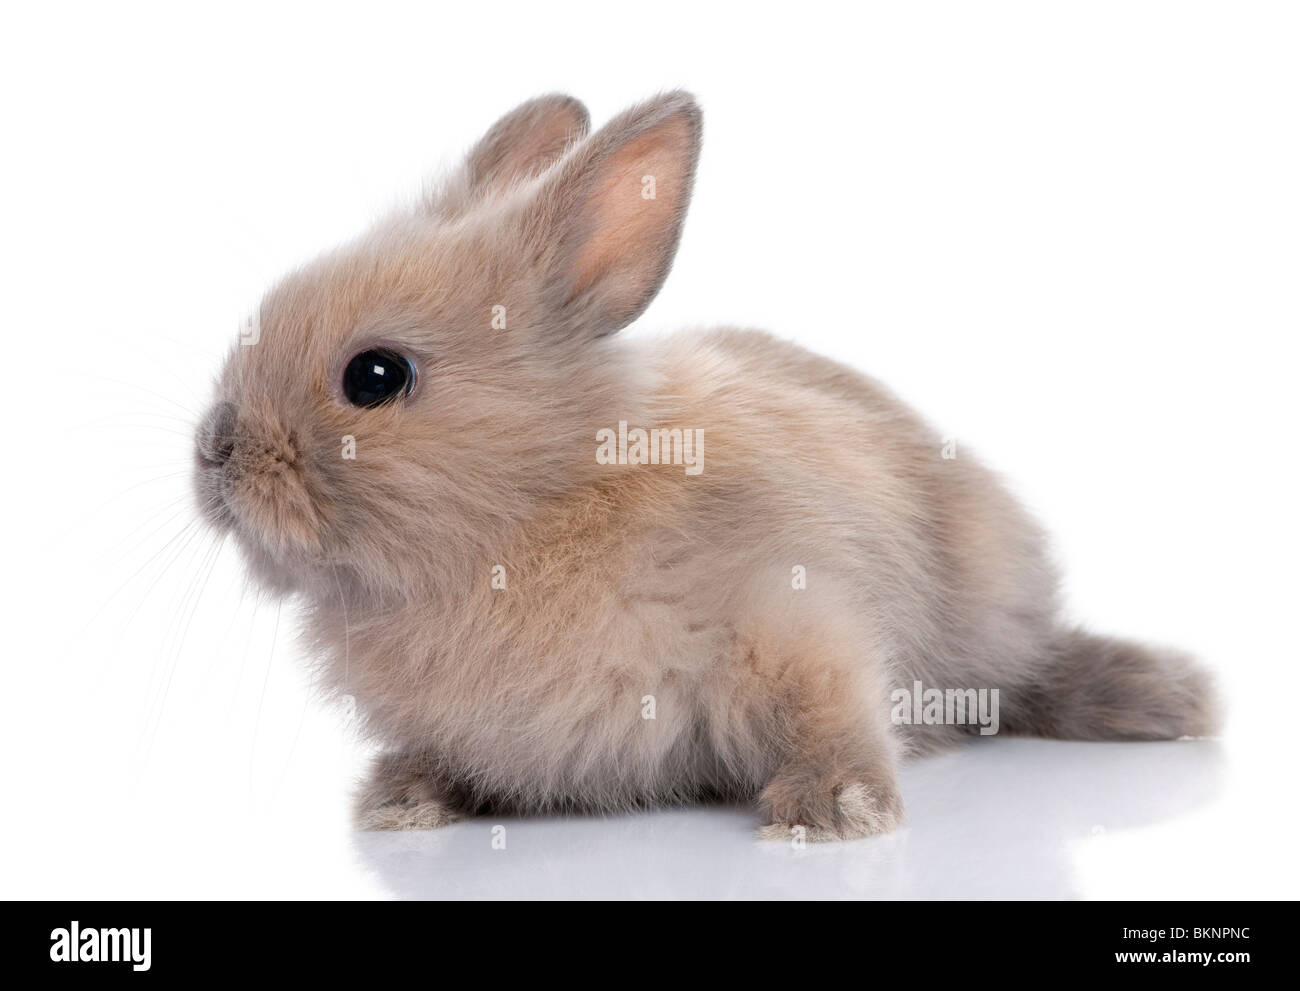 Brauner Baby Kaninchen, 5 Wochen alt, vor einem weißen Hintergrund Stockfoto